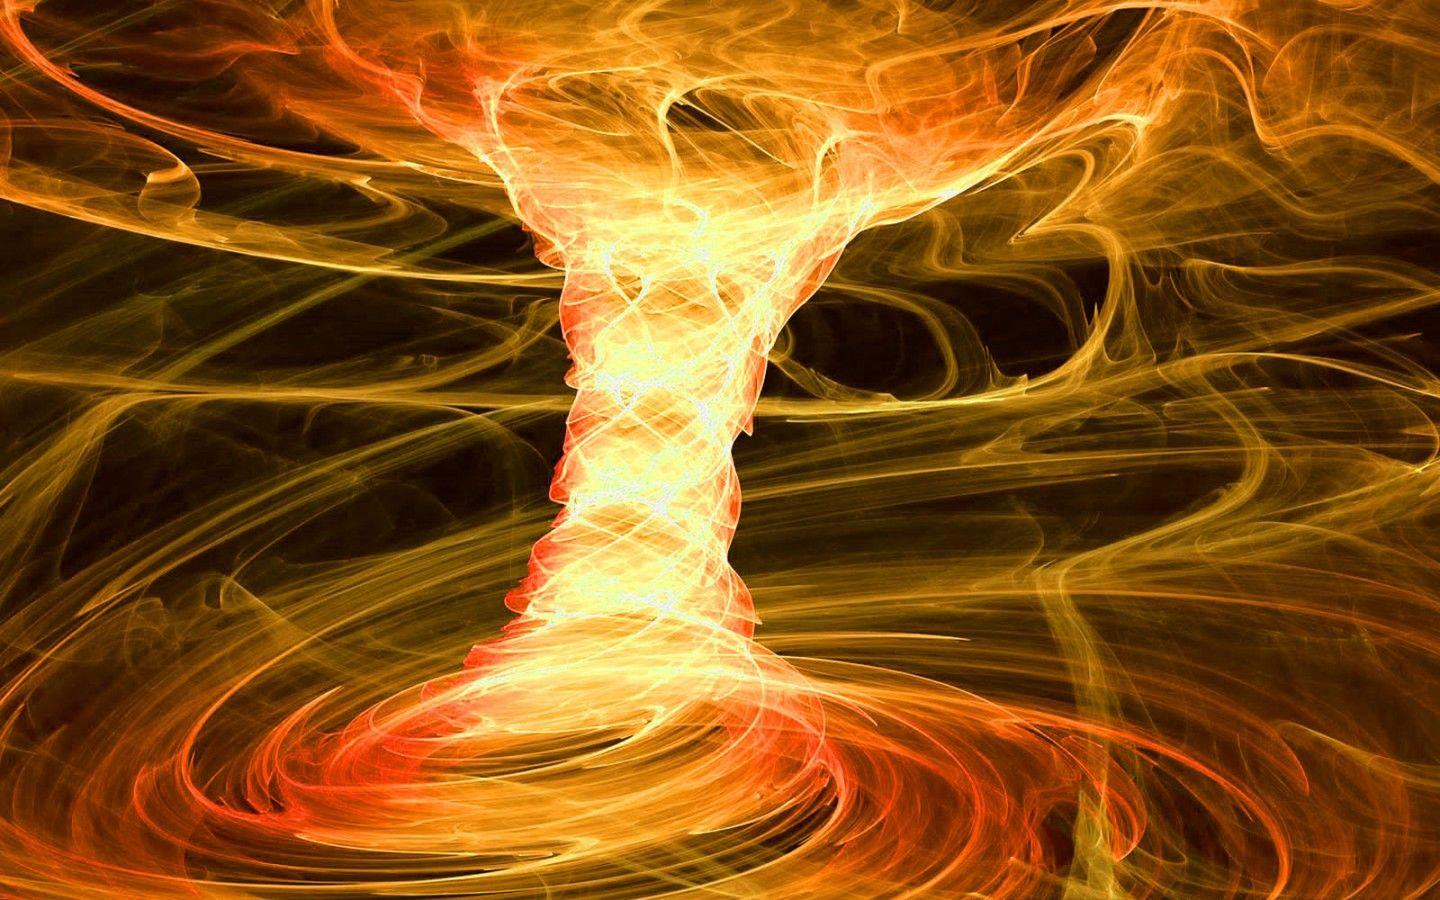 Spiral Torus Fire Whirl. Element Trigram: Fire